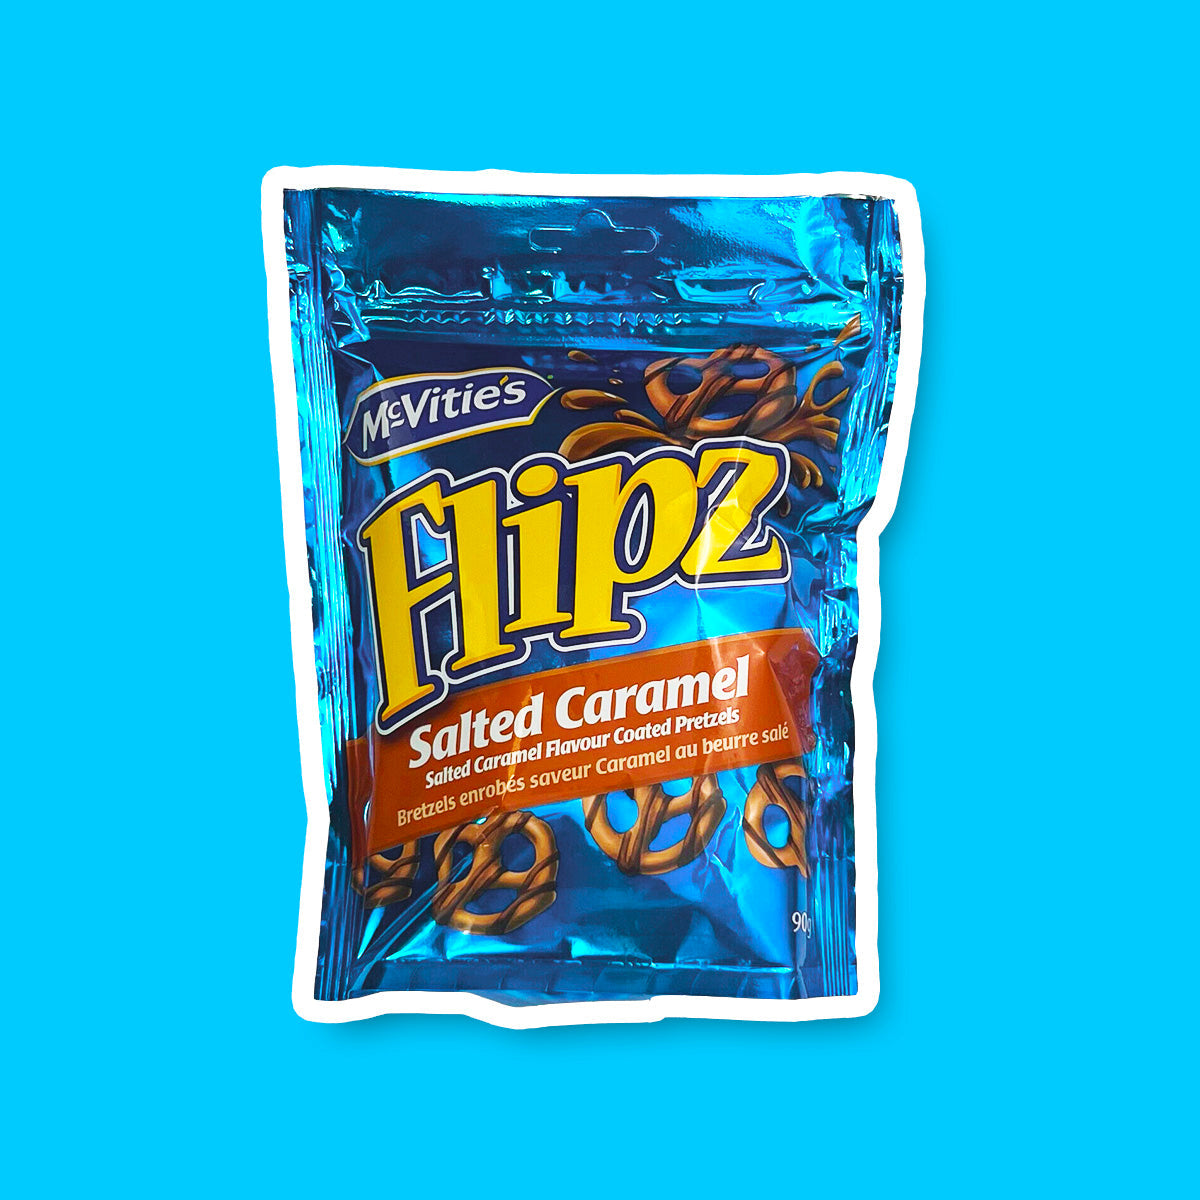 Un emballage bleu brillant sur fond bleu, avec 5 petits bretzels bruns dont un en haut à gauche avec une éclaboussure de caramel 